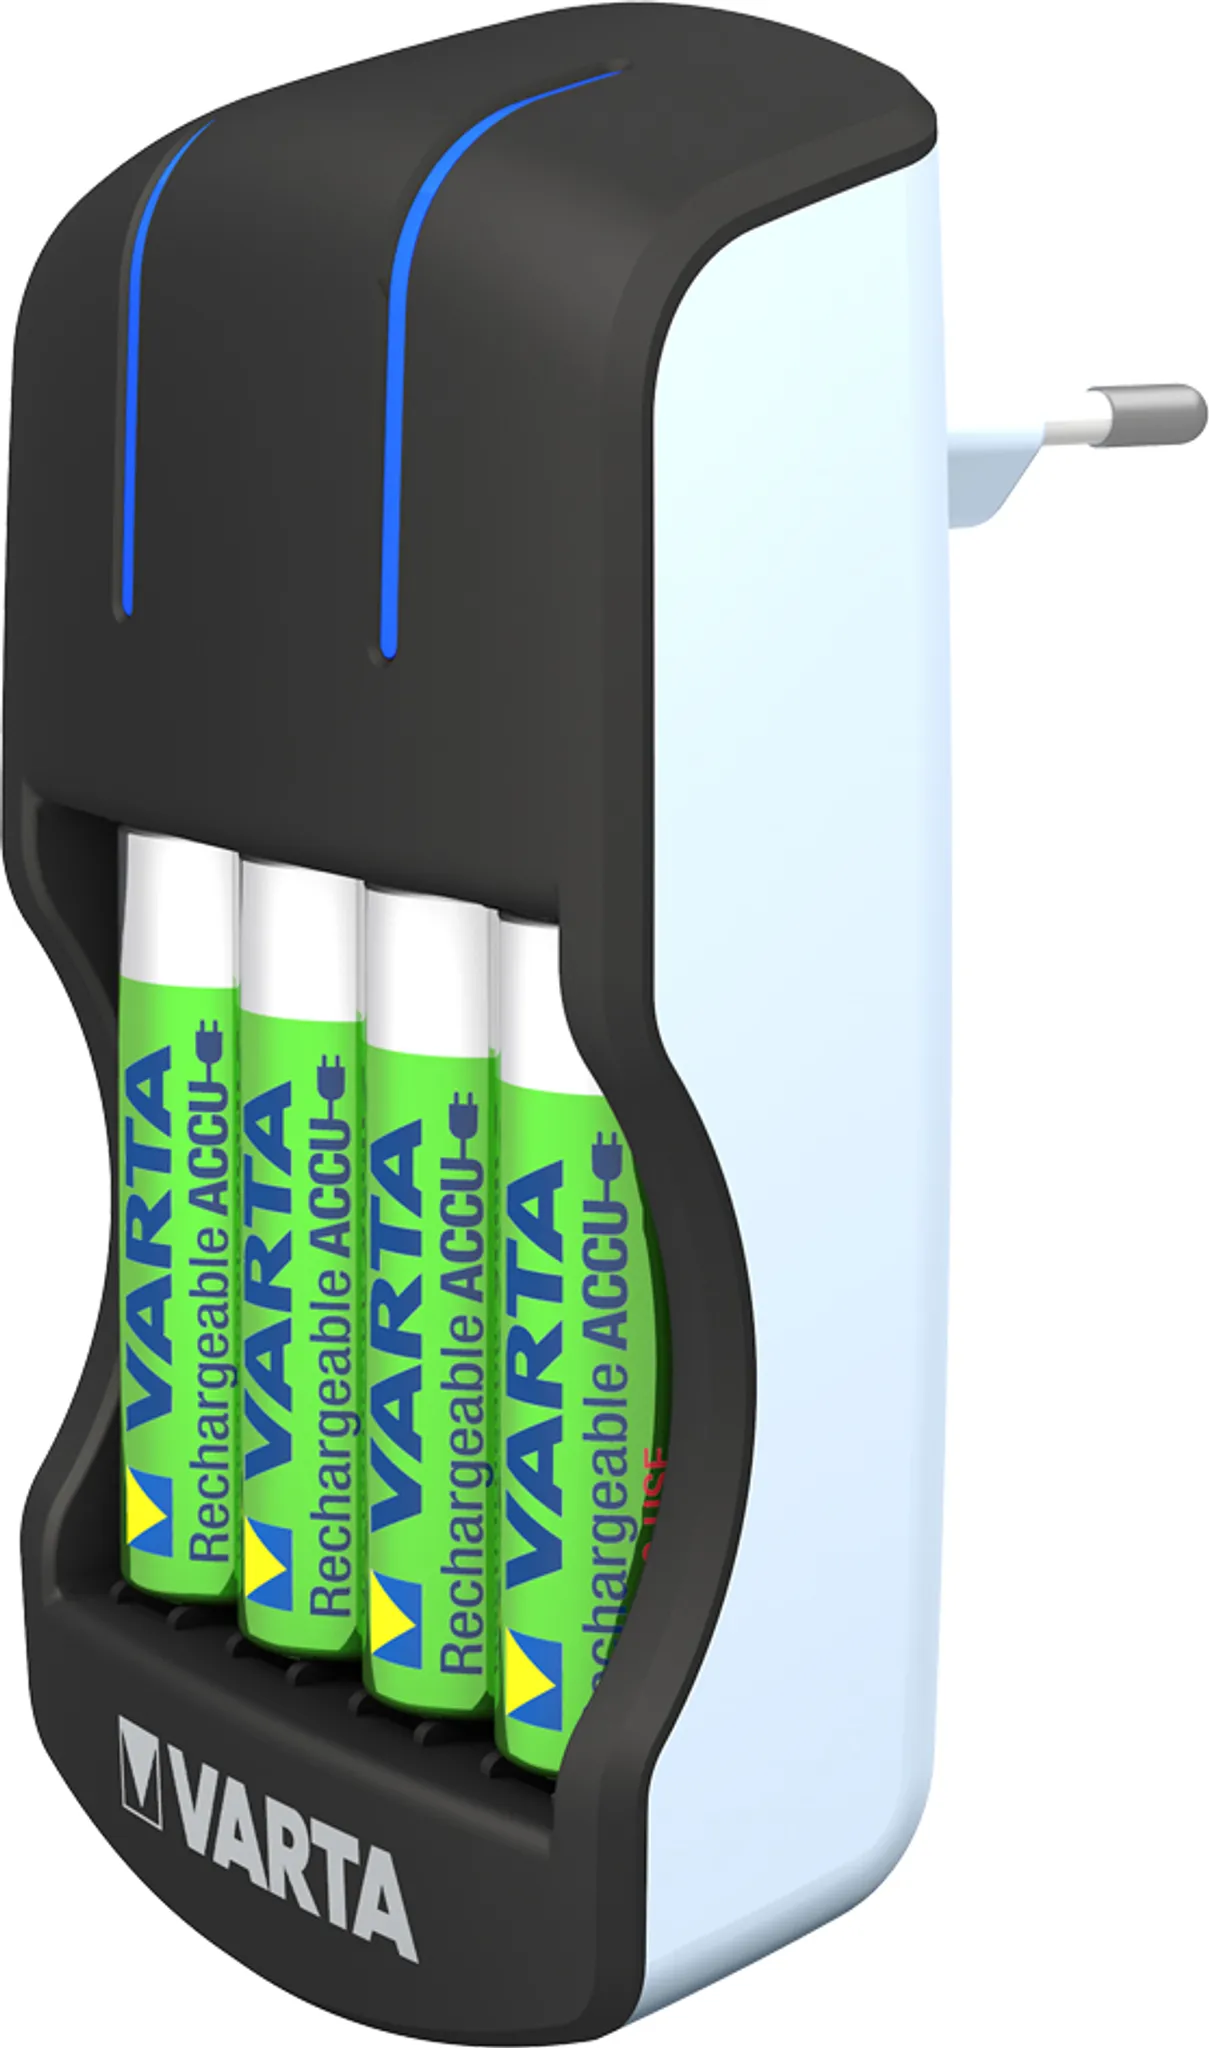 4x AA Batterien für AA AAA 9V USB Geräte Batterieladegerät Varta Ladegerät inkl 